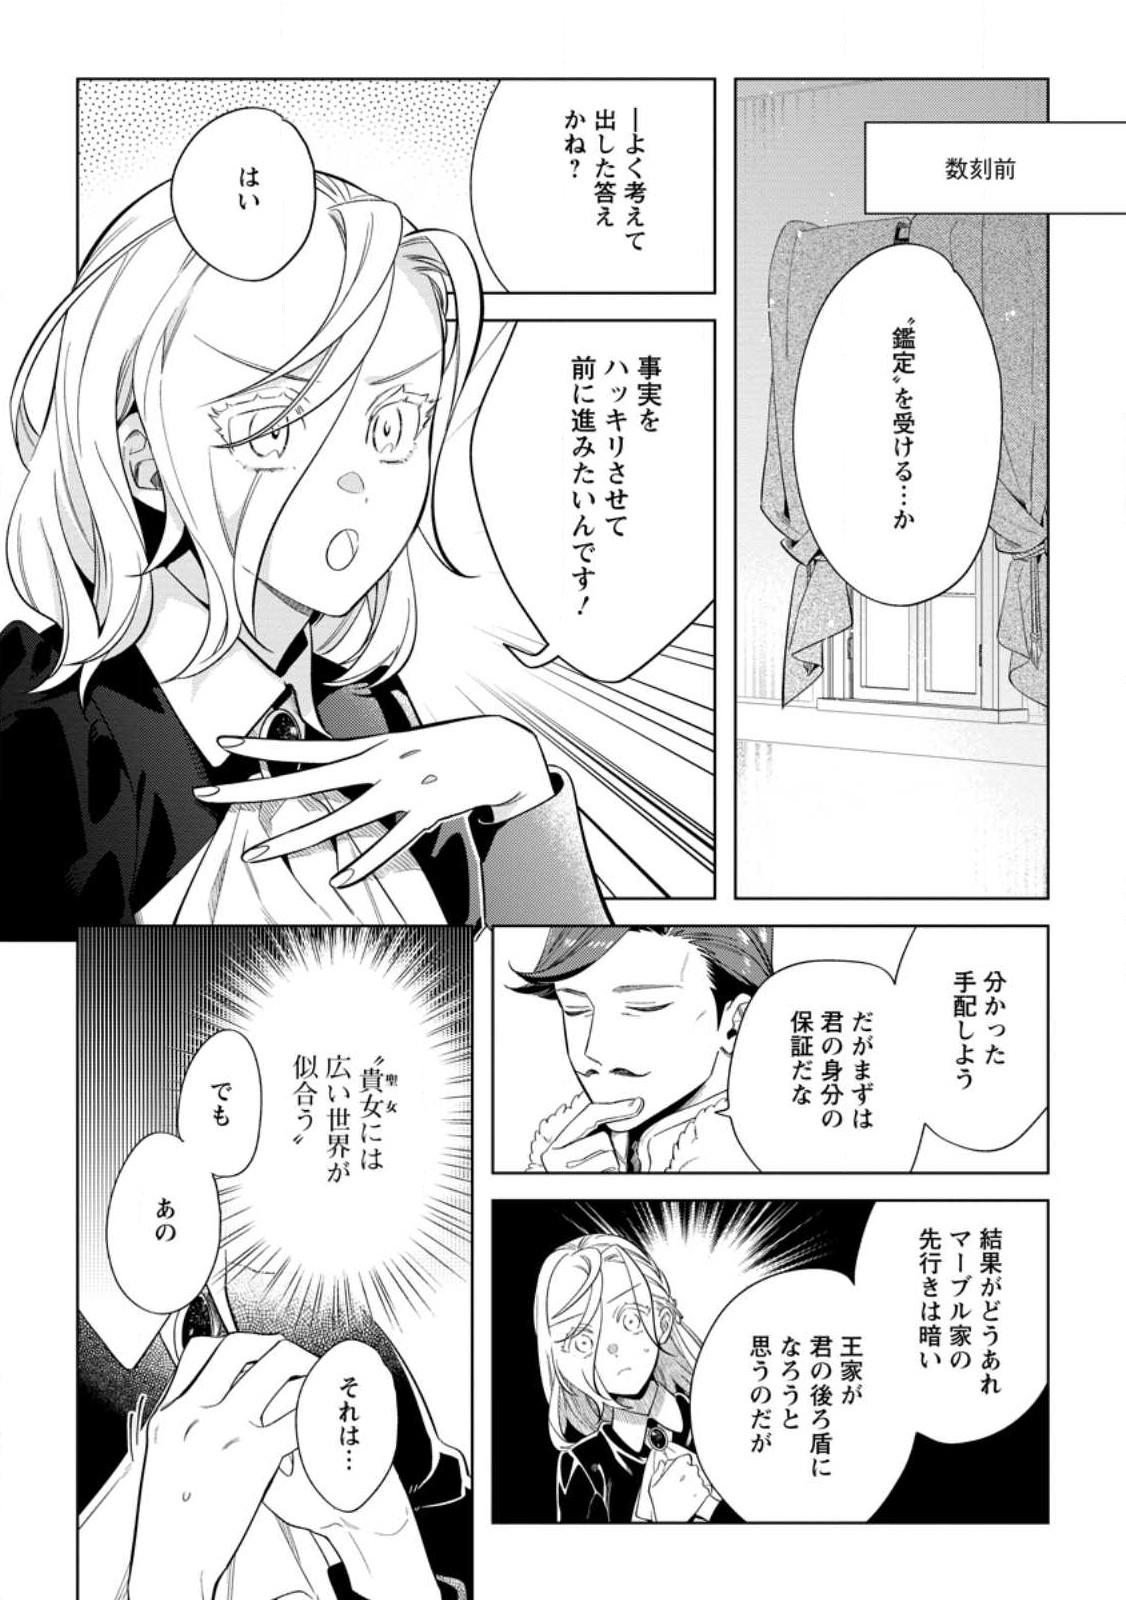 Dare ni mo Aisarenai no de Yuka wo Migaite Itara Soko ga Seiiki-ka shita Reijou no Hanashi - Chapter 13.1 - Page 2